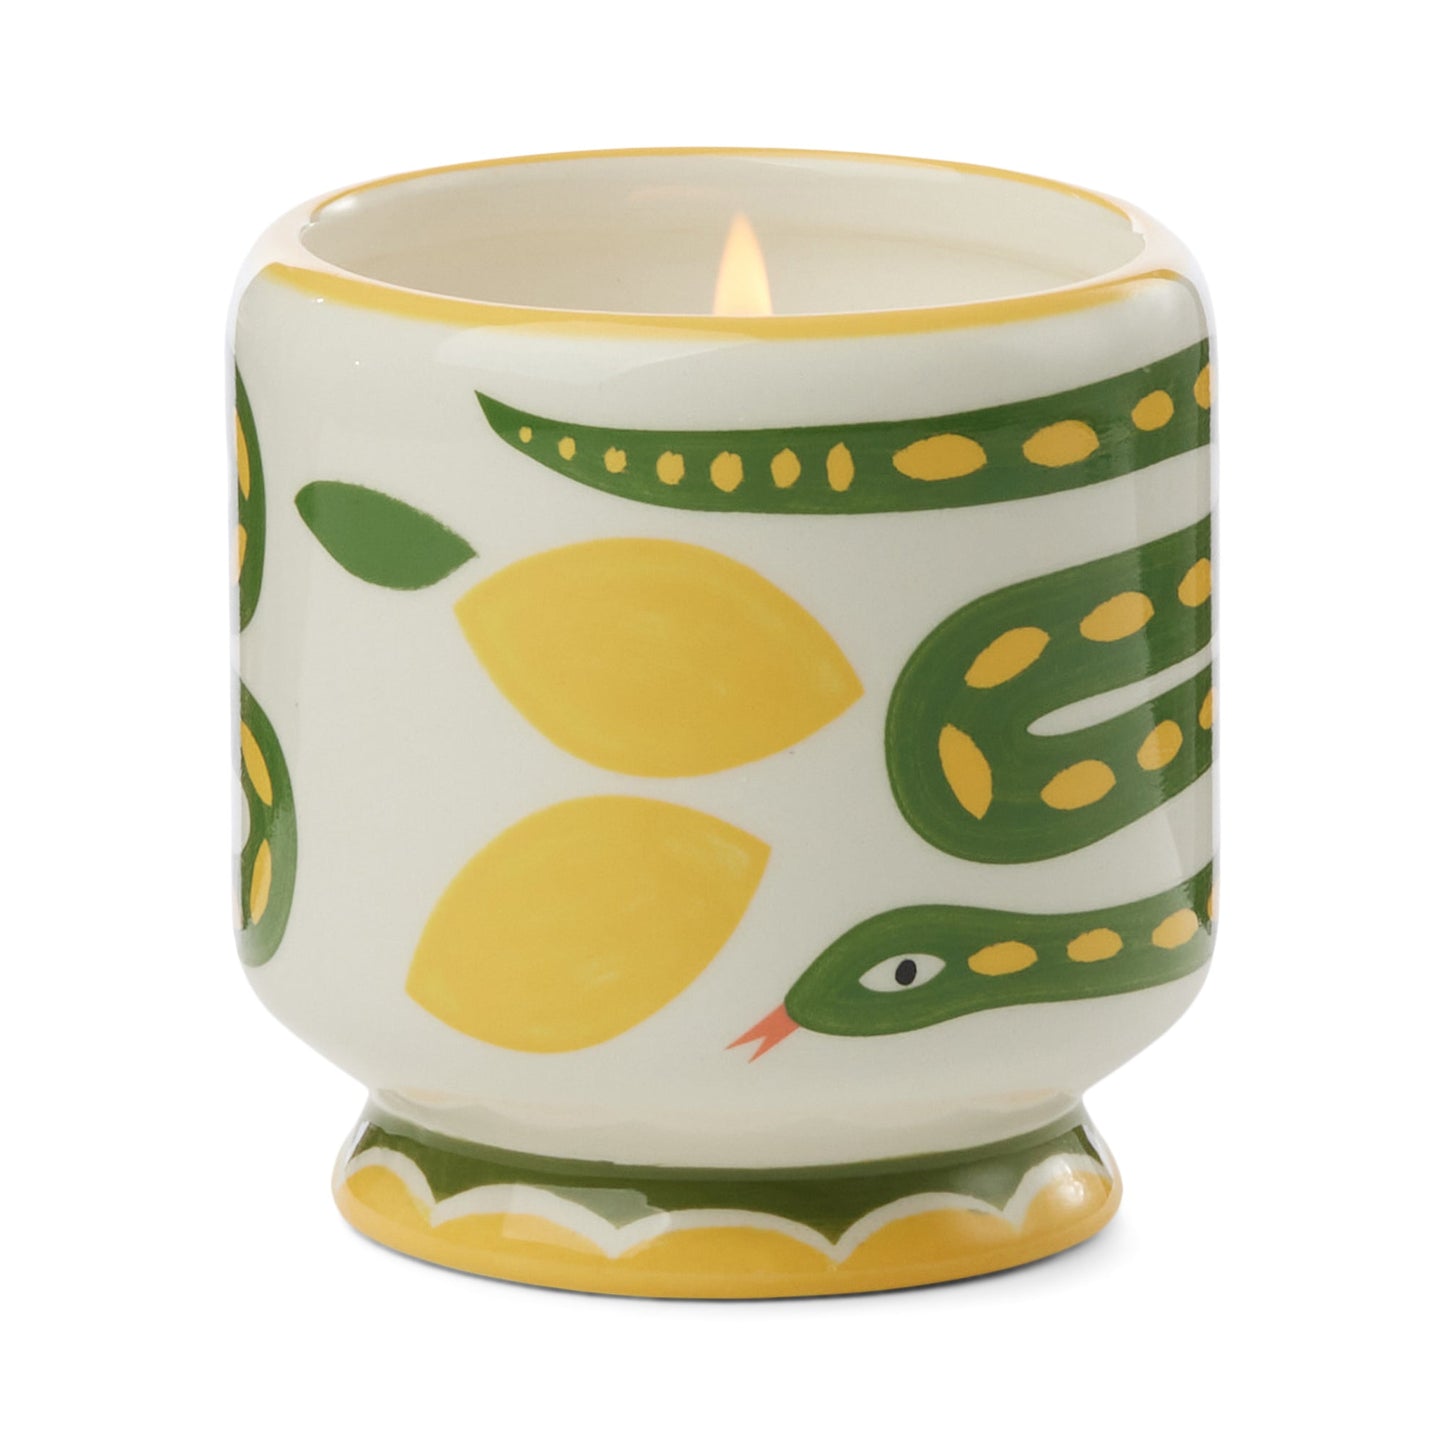 Adopo 8 oz./226g Snake Ceramic Candle - Wild Lemongrass